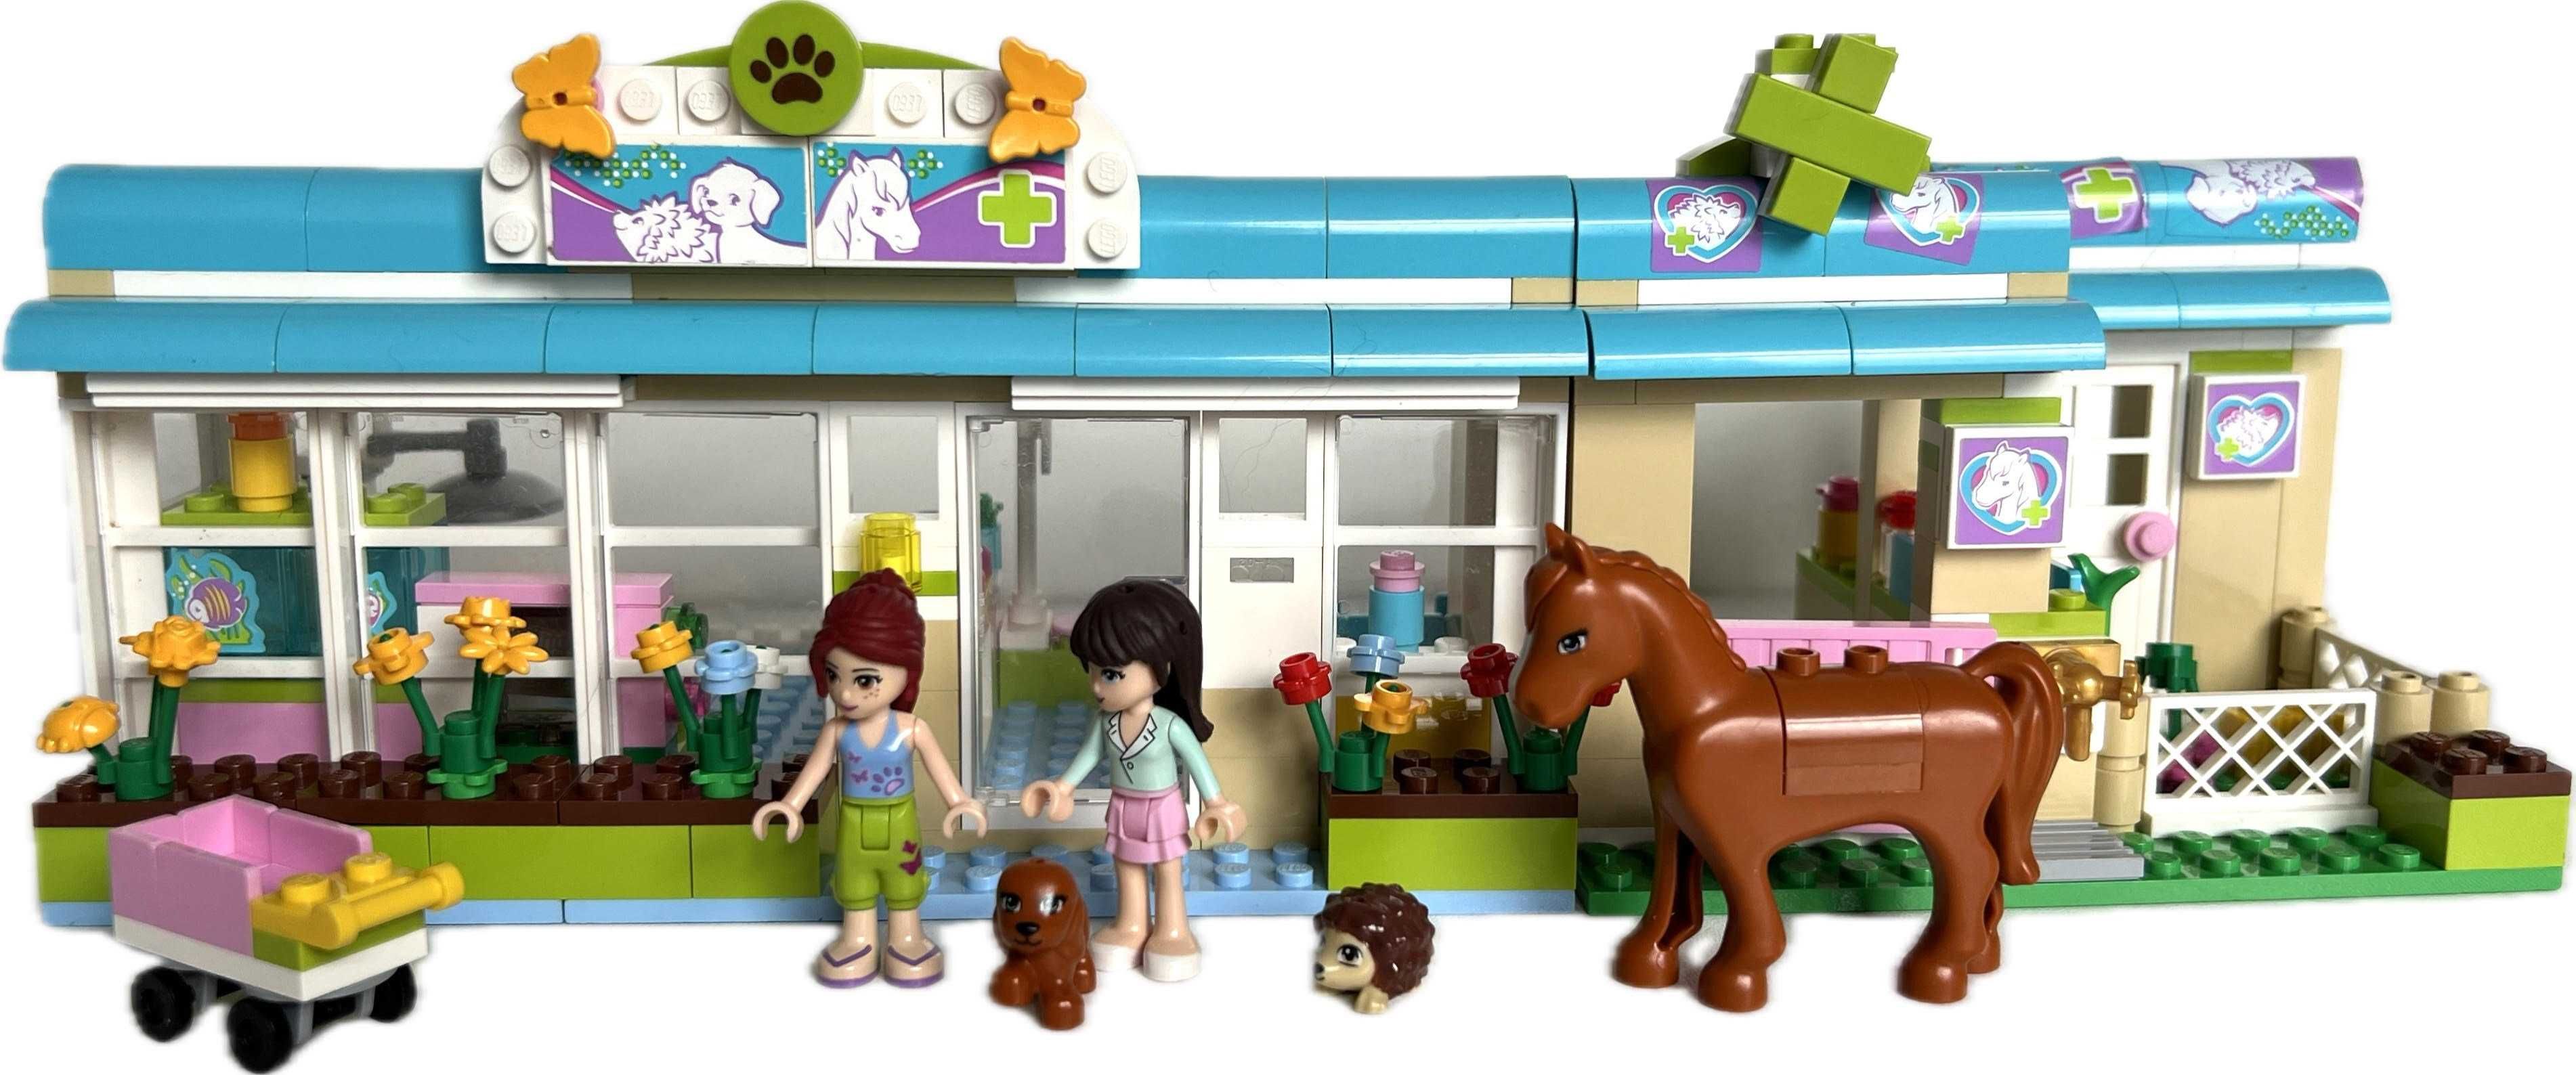 Lego Friends 3188 Weterynarz, klinika dla zwierząt